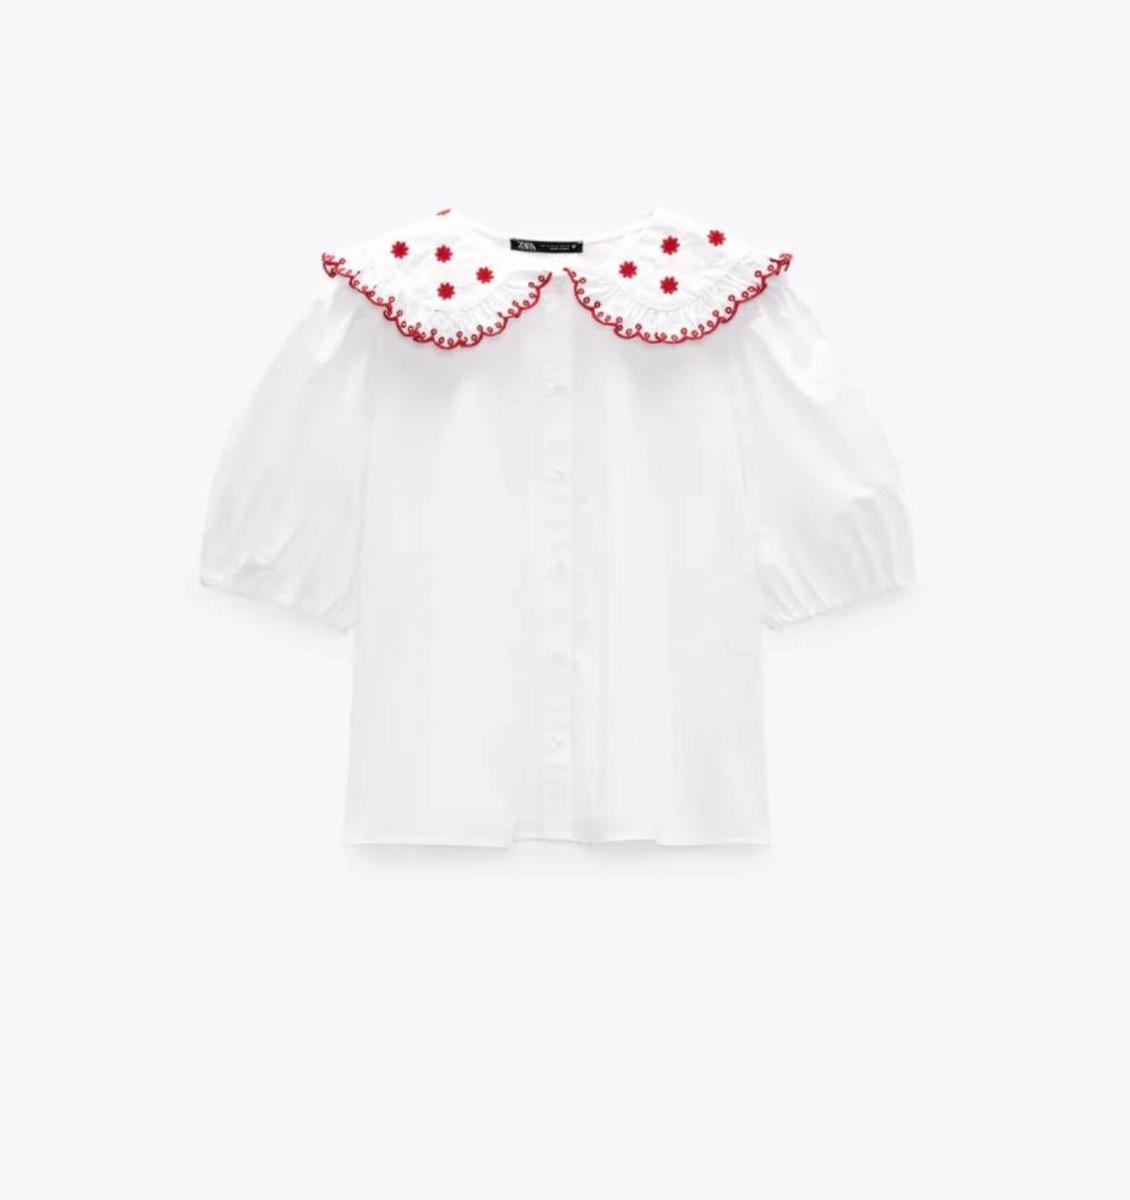 Blusa blanca con cuello bobo en tonos rojos de Zara